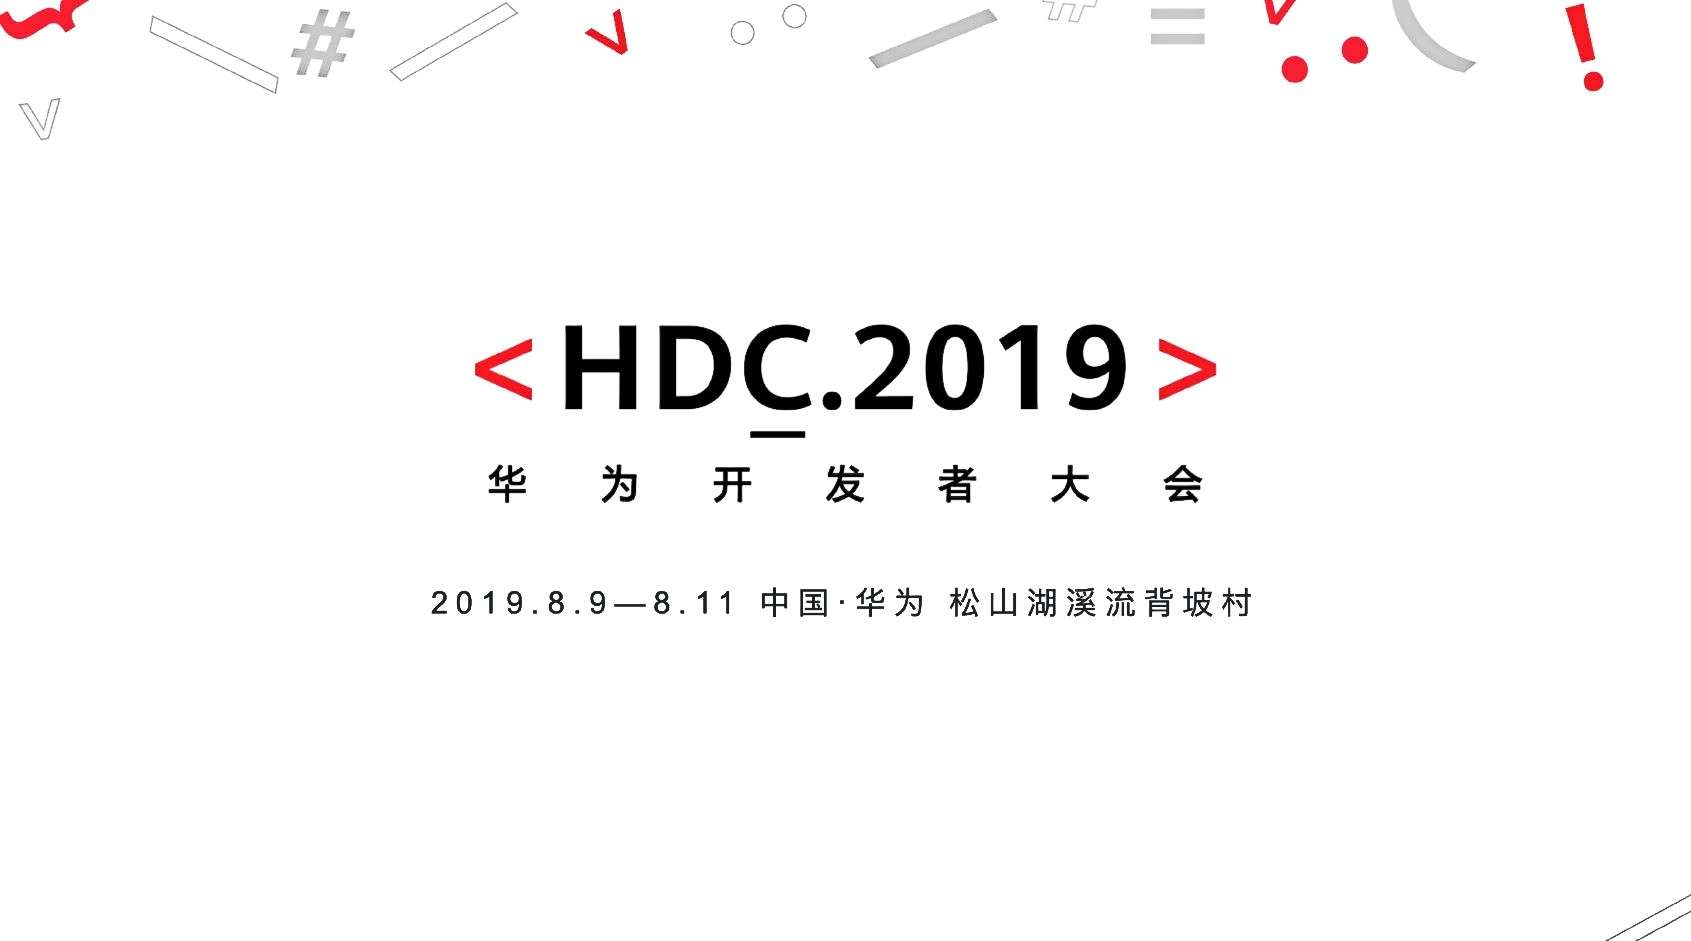 2019HDC大会 华为 5G全场景智慧未来 宣传片